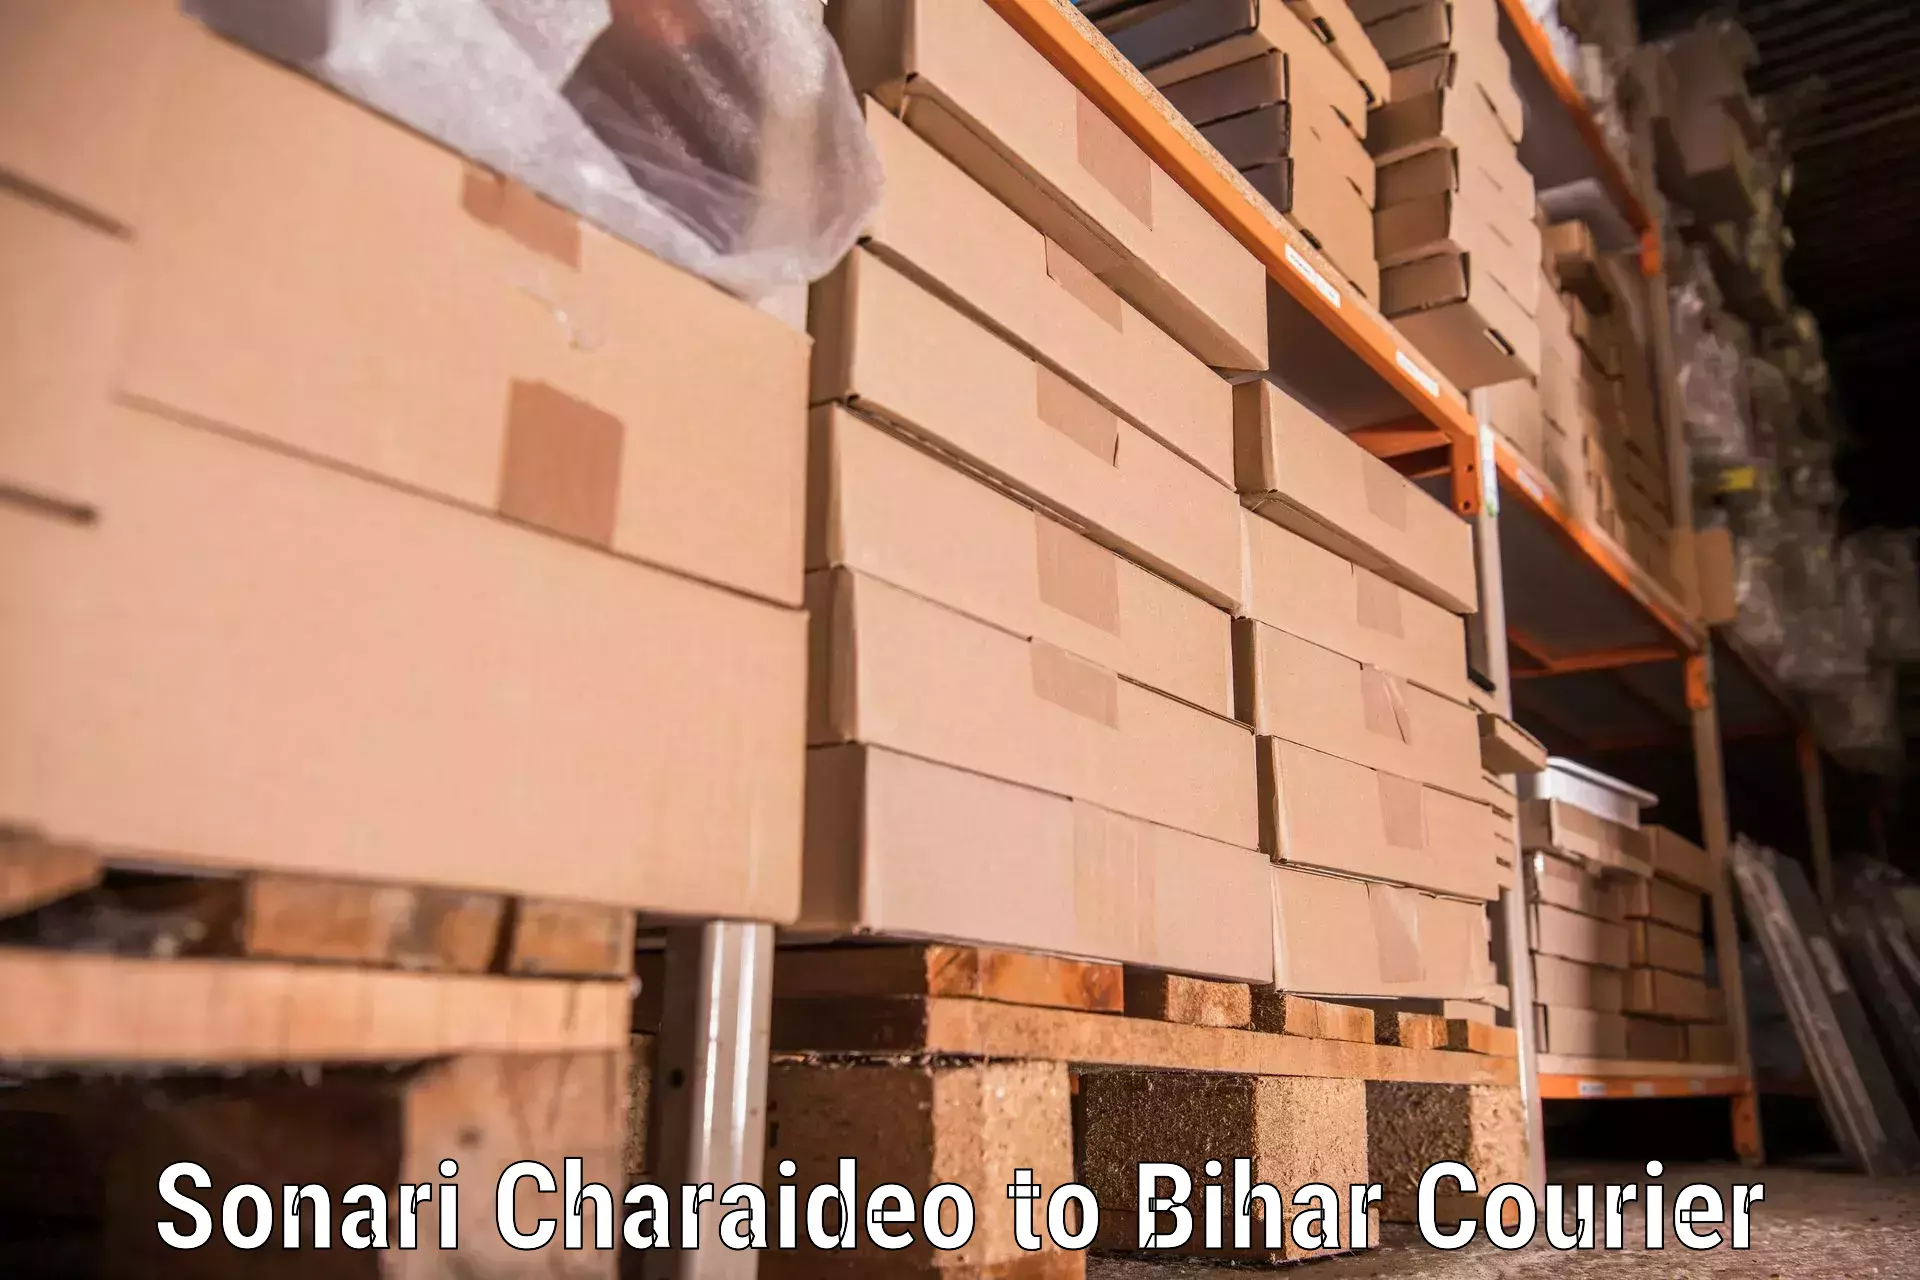 Professional relocation services Sonari Charaideo to Dehri